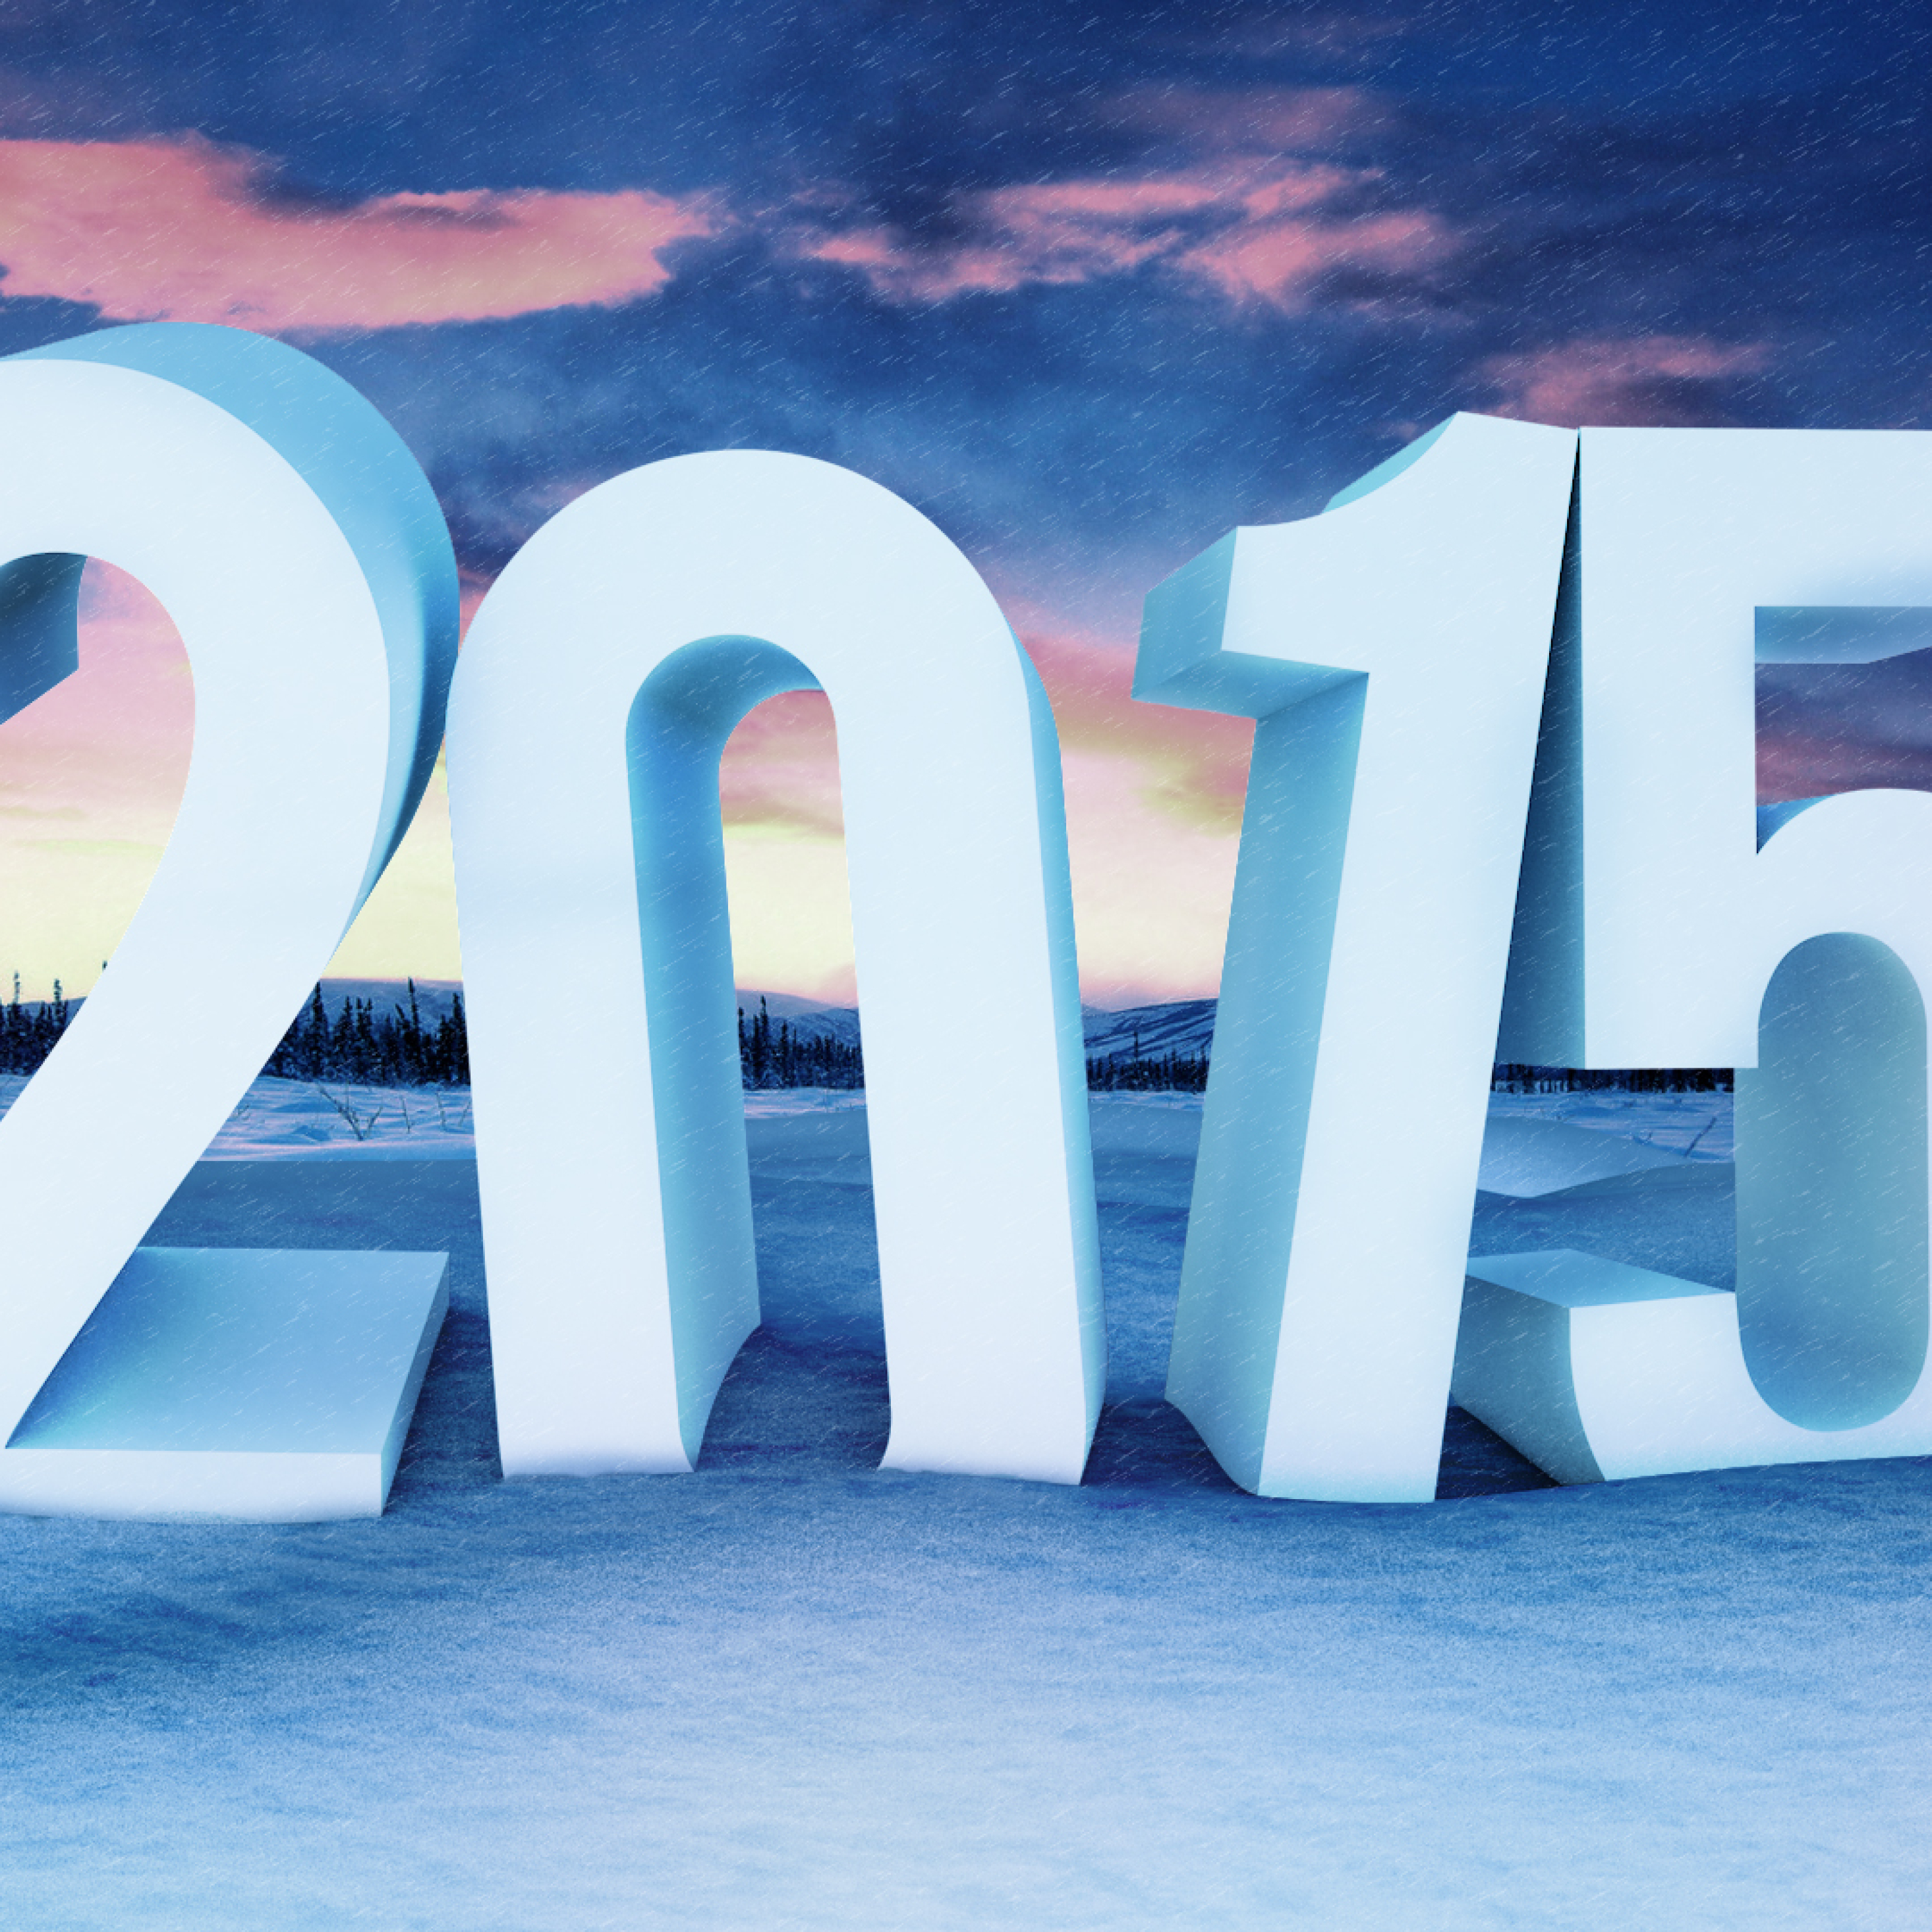 Новинки 2015 год. 2015 Год. 2015 Год картинки. Картинки новый год 2015. Красивые картинки 2015.